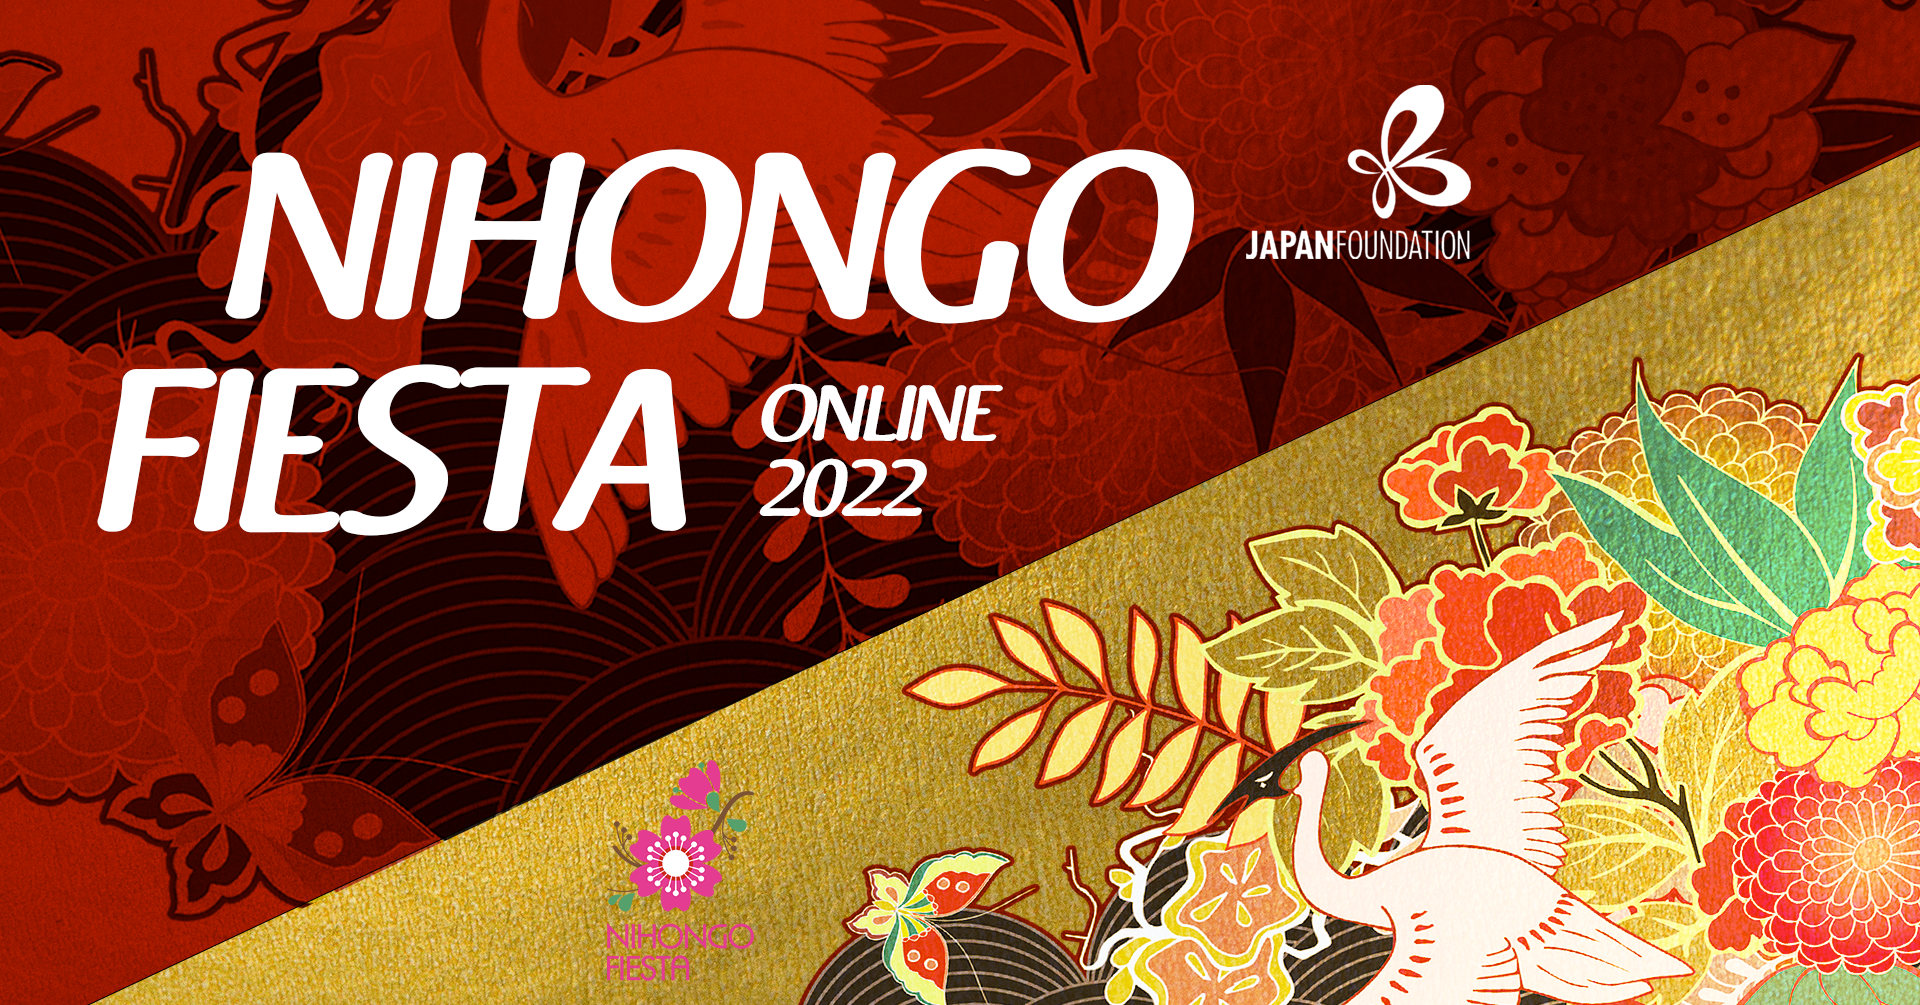 Nihongo Fiesta Online 2022